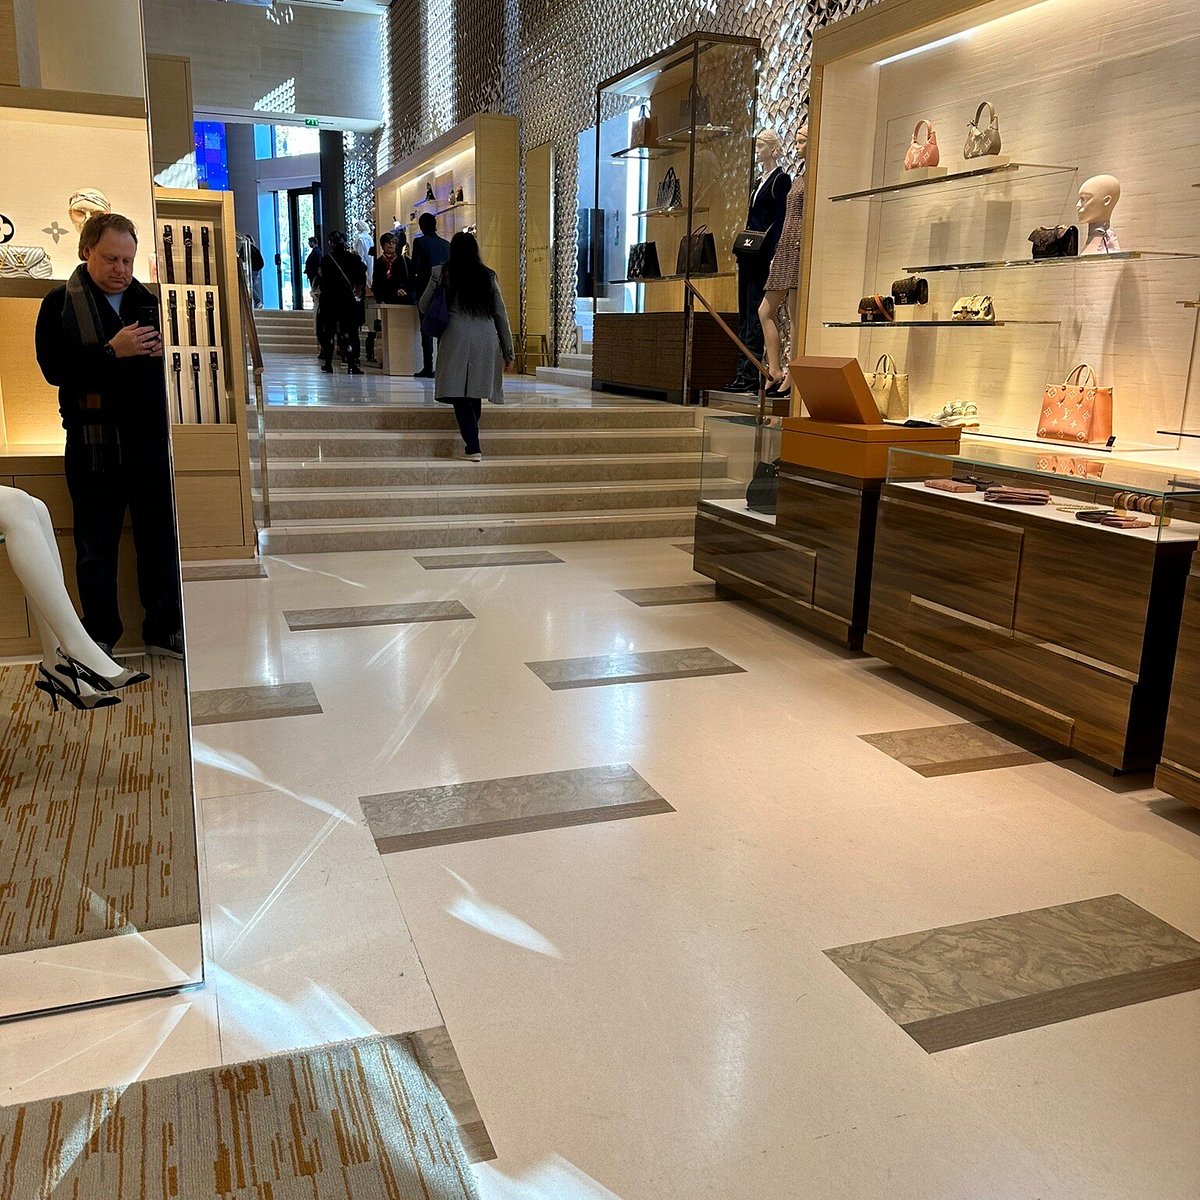 Louis Vuitton Champs Elysées : la boutique métamorphosée